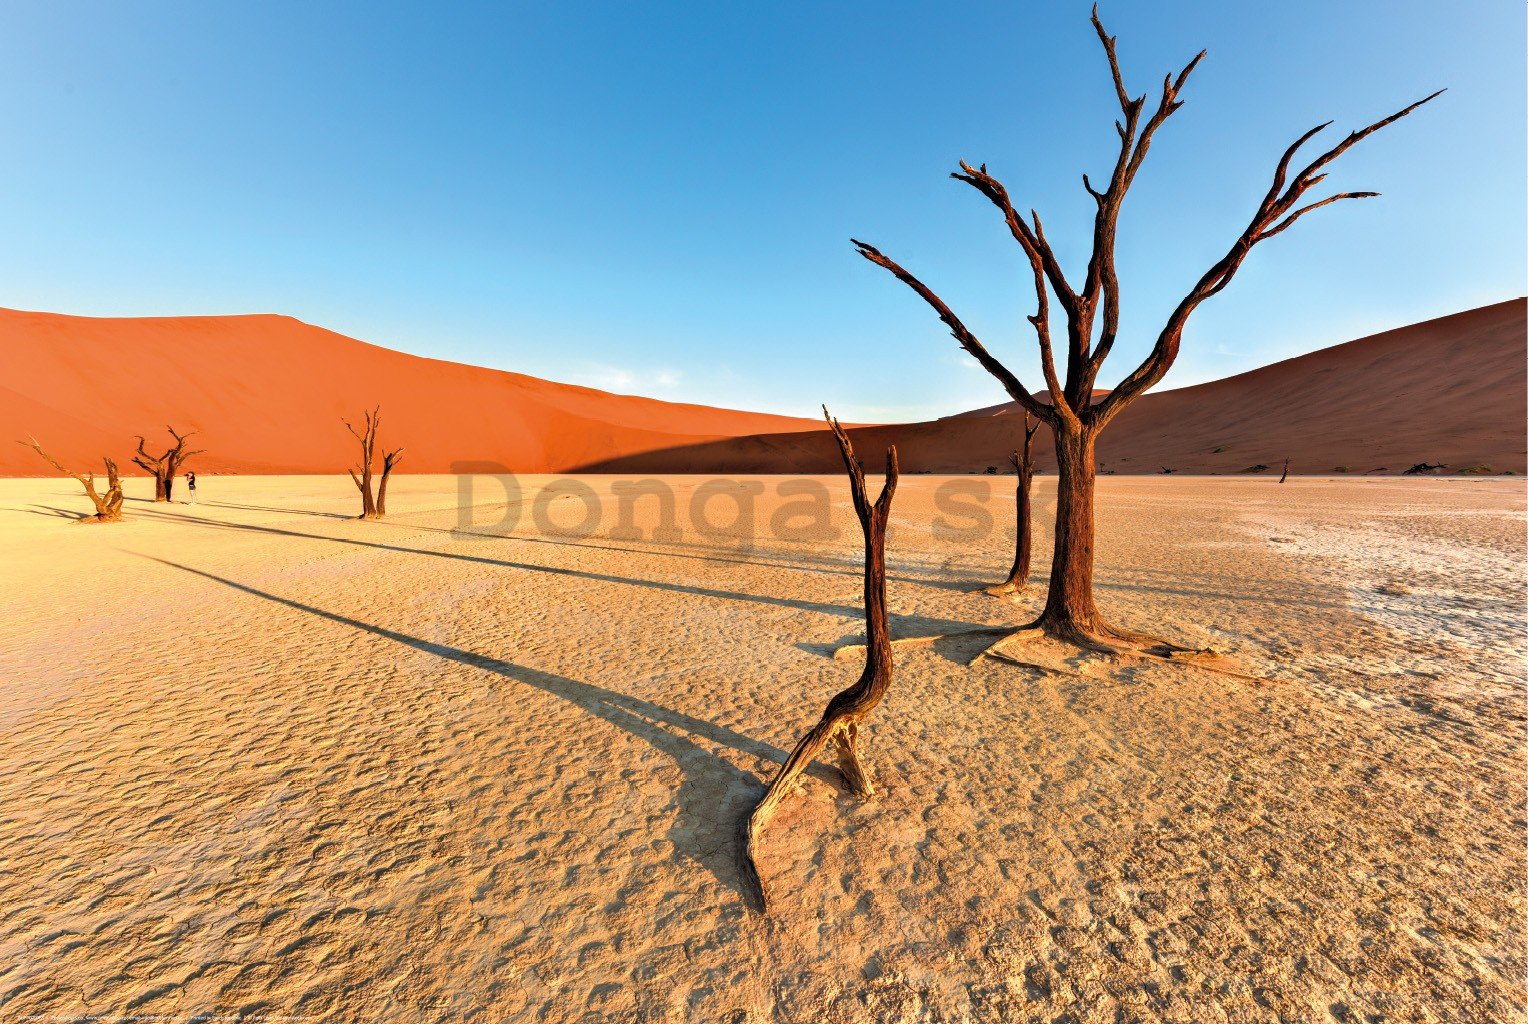 Plagát: Vyprahnutá púšť Namib